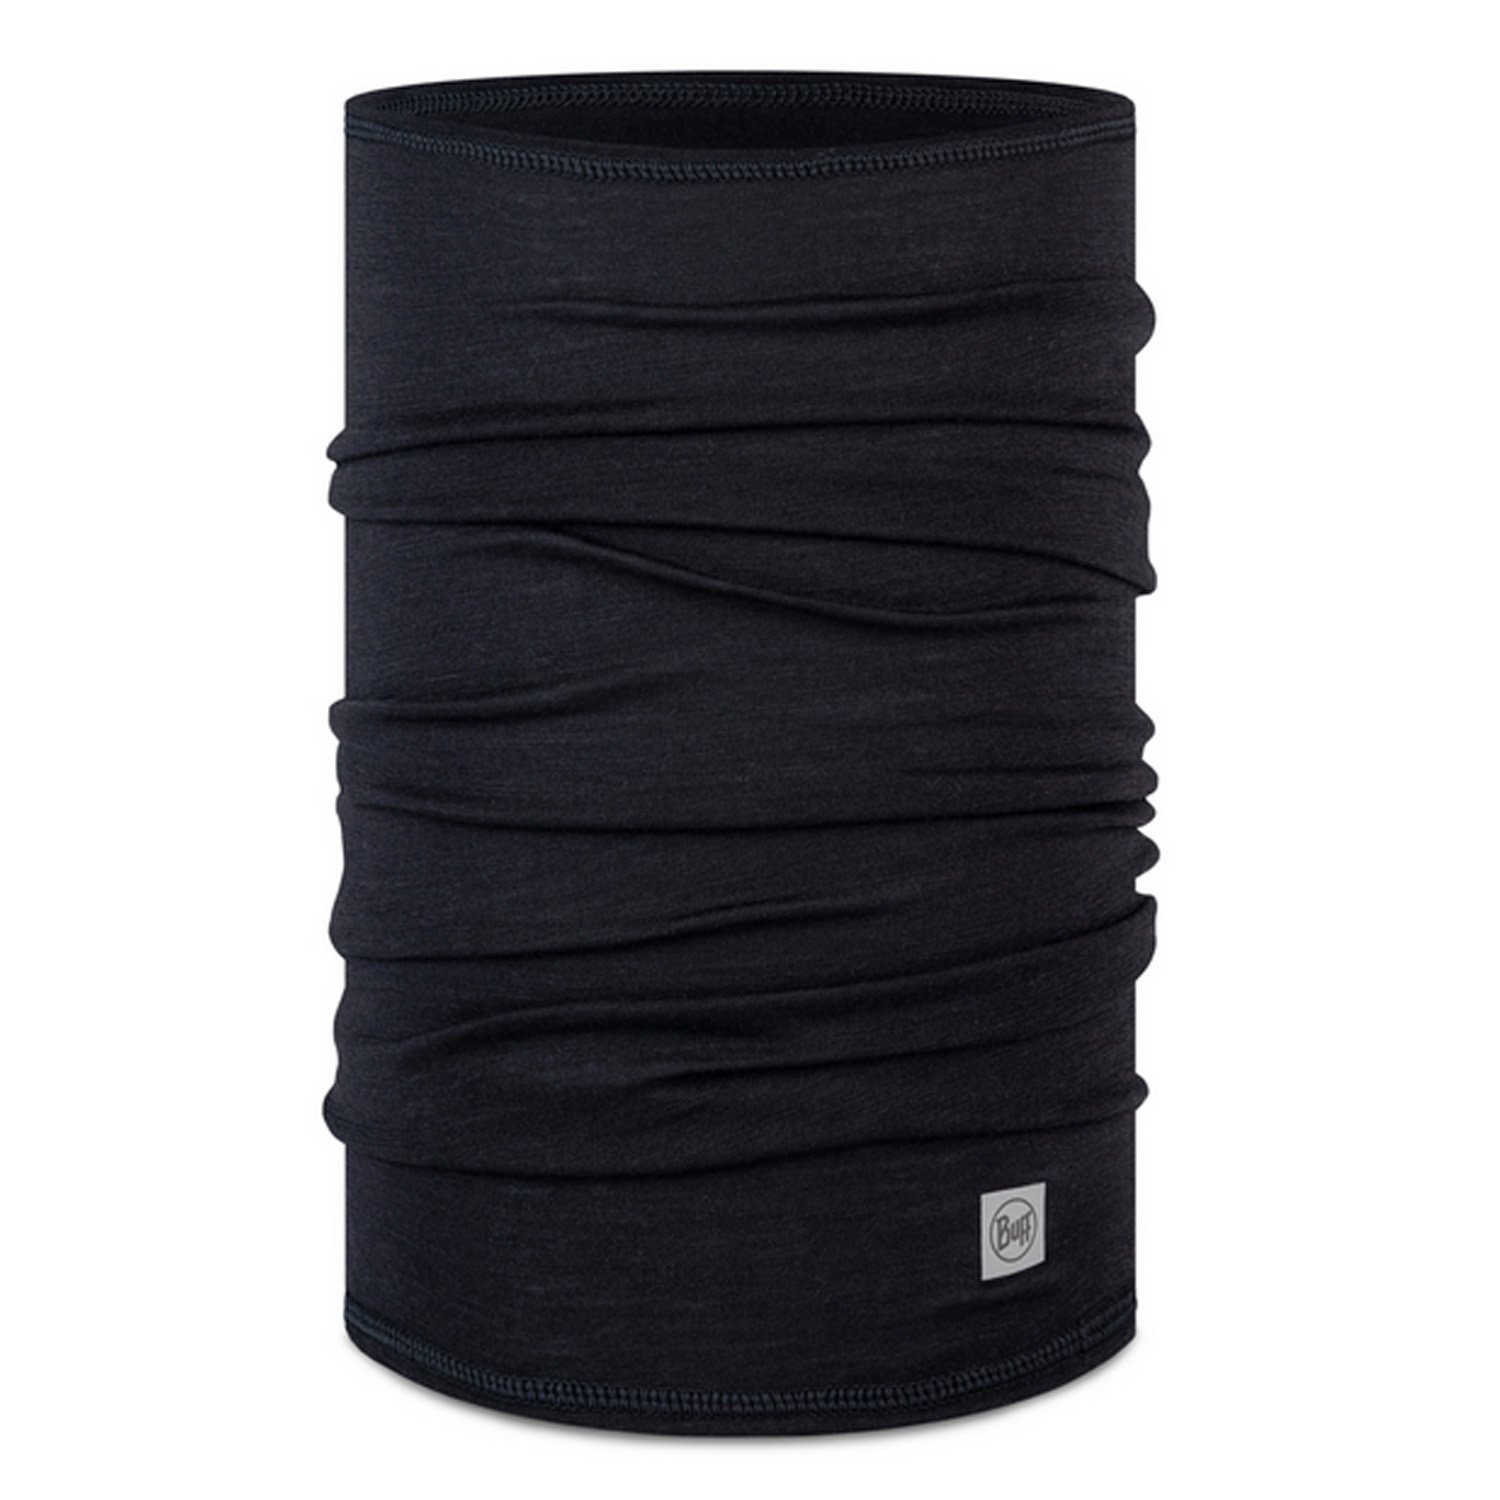 Бандана Buff Lightweight Merino Wool Solid Black, черный, 2023, 132280.999.10.00 бандана buff merino lightweight graphite multistripes us one size 123324 901 10 00